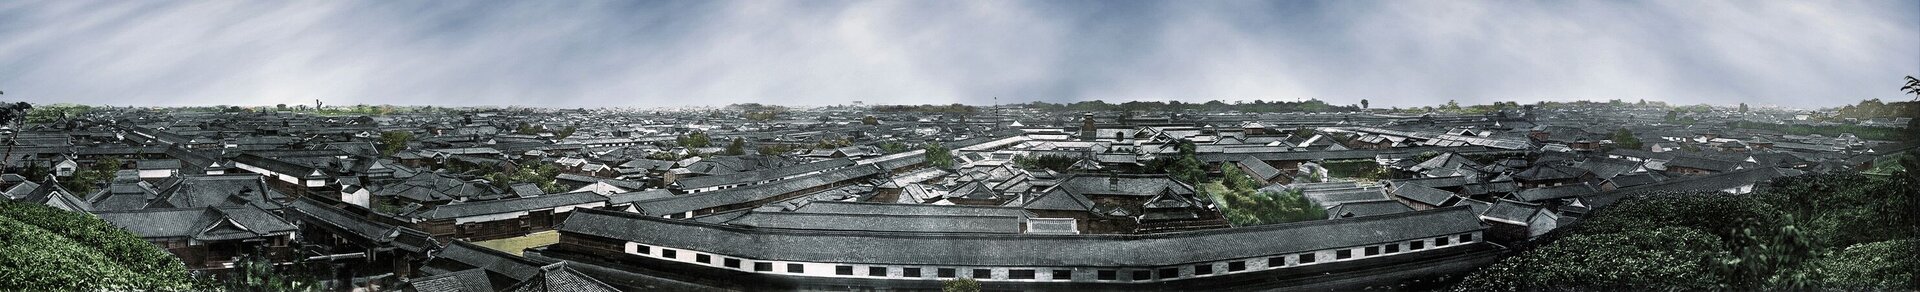 Zdjęcie przedstawia panoramę miasta Tokio w drugiej połowie XIX wieku. Szereg zabudowań z dwuspadowymi, szarymi dachami, wybudowanych w nieregularnym układzie. Na pierwszym planie długi budynek z białą ścianą boczną i szeregiem otworów okiennym w kształcie prostokąta. Po obu krawędziach fotografii widoczne zieleńce wzniesienia, z którego wykonywano fotografię. 